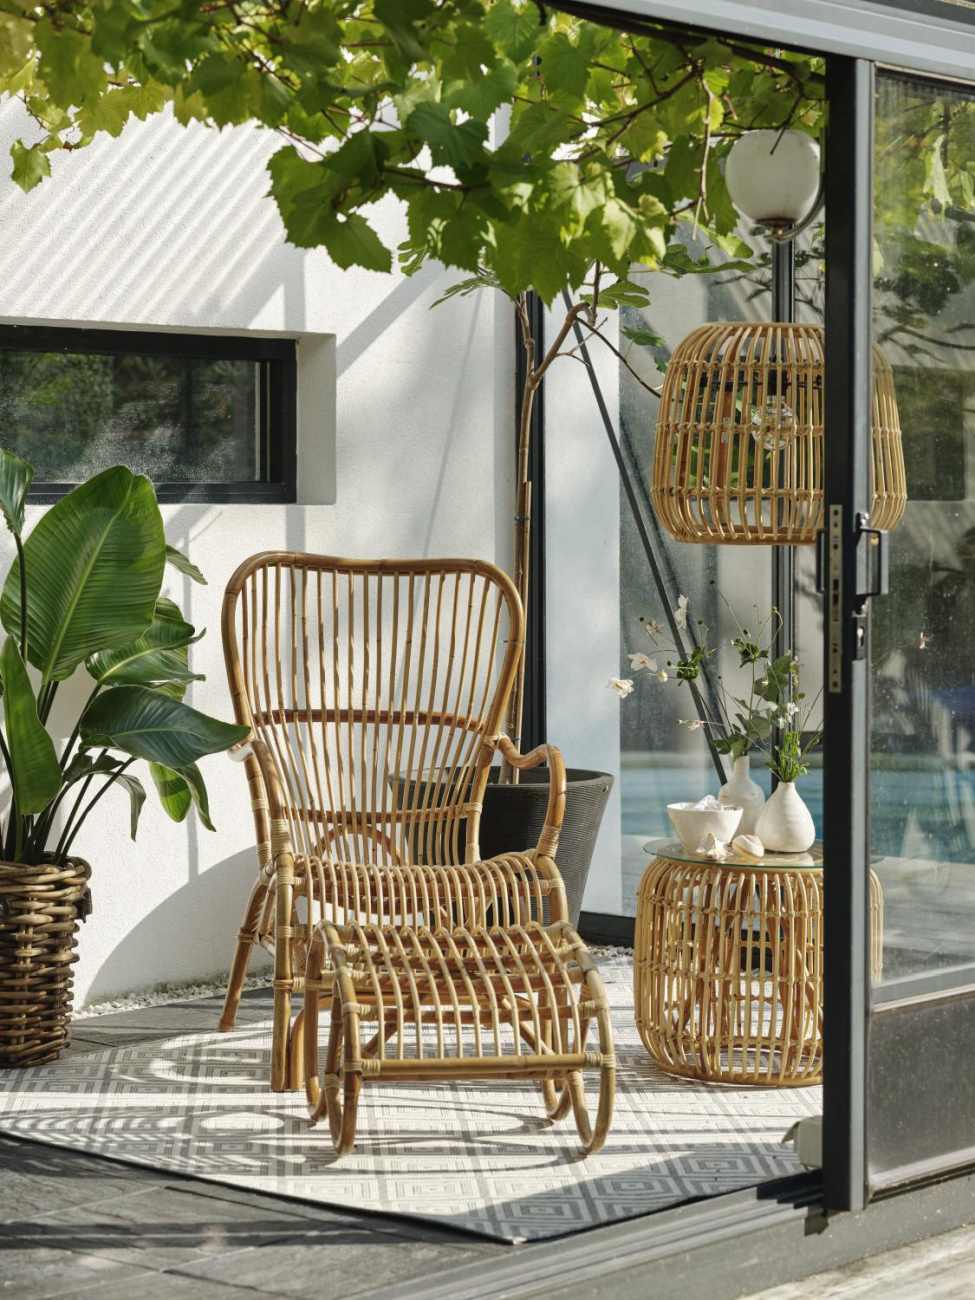 Der Gartensessel Vallda überzeugt mit seinem modernen Design. Gefertigt wurde er aus Rattan, welches einen natürlichen Farbton besitzt. Die Sitzhöhe des Sessels beträgt 42 cm.